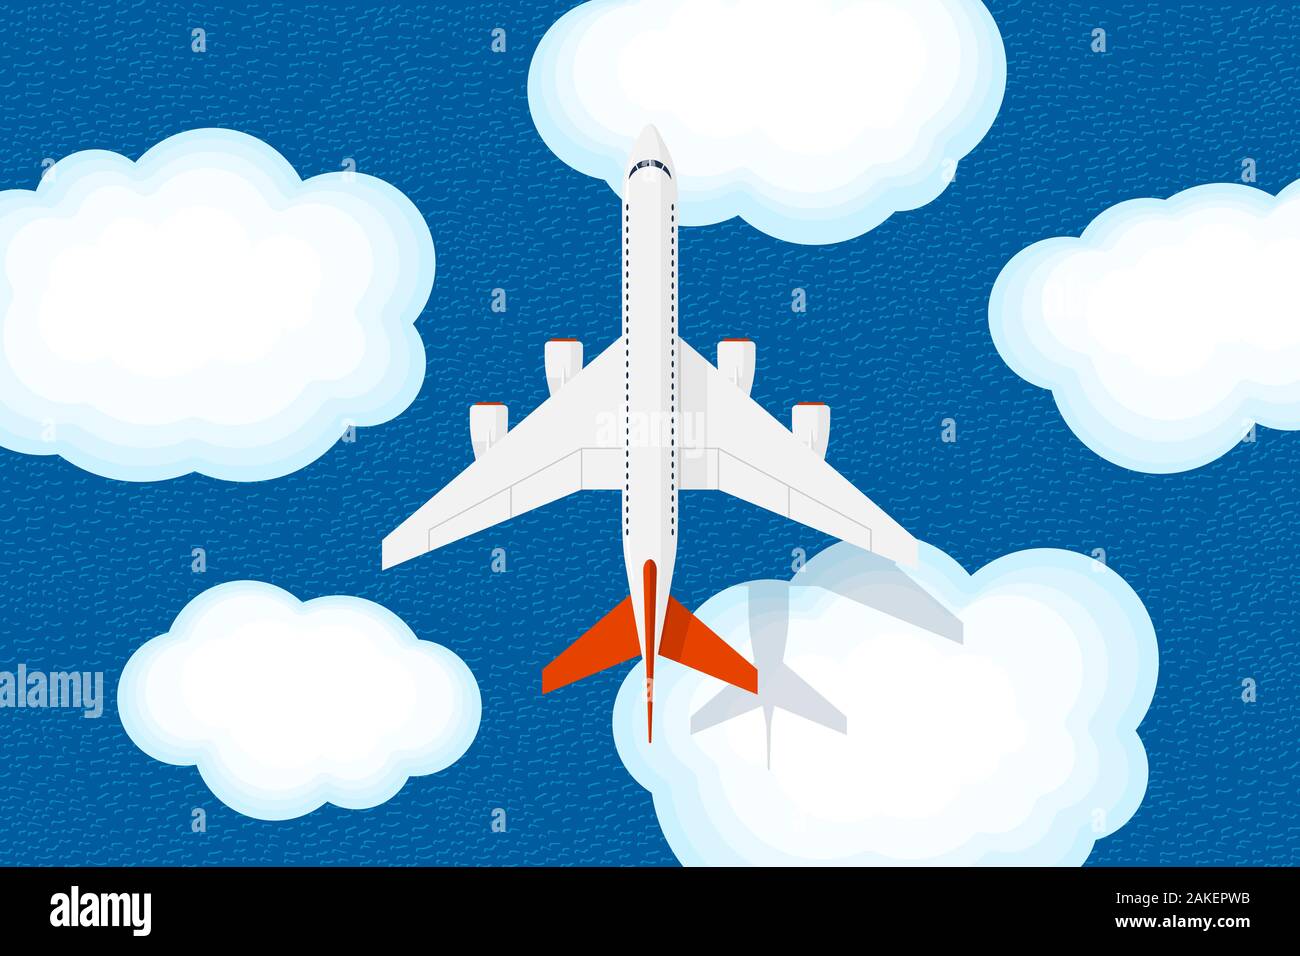 Große Jet PKW Flugzeug fliegt über Himmel Wolken und Meer mit Wellen. Zivile Luftfahrt Fliegen Flugzeug Ansicht von oben. Flache Vector Illustration Stock Vektor